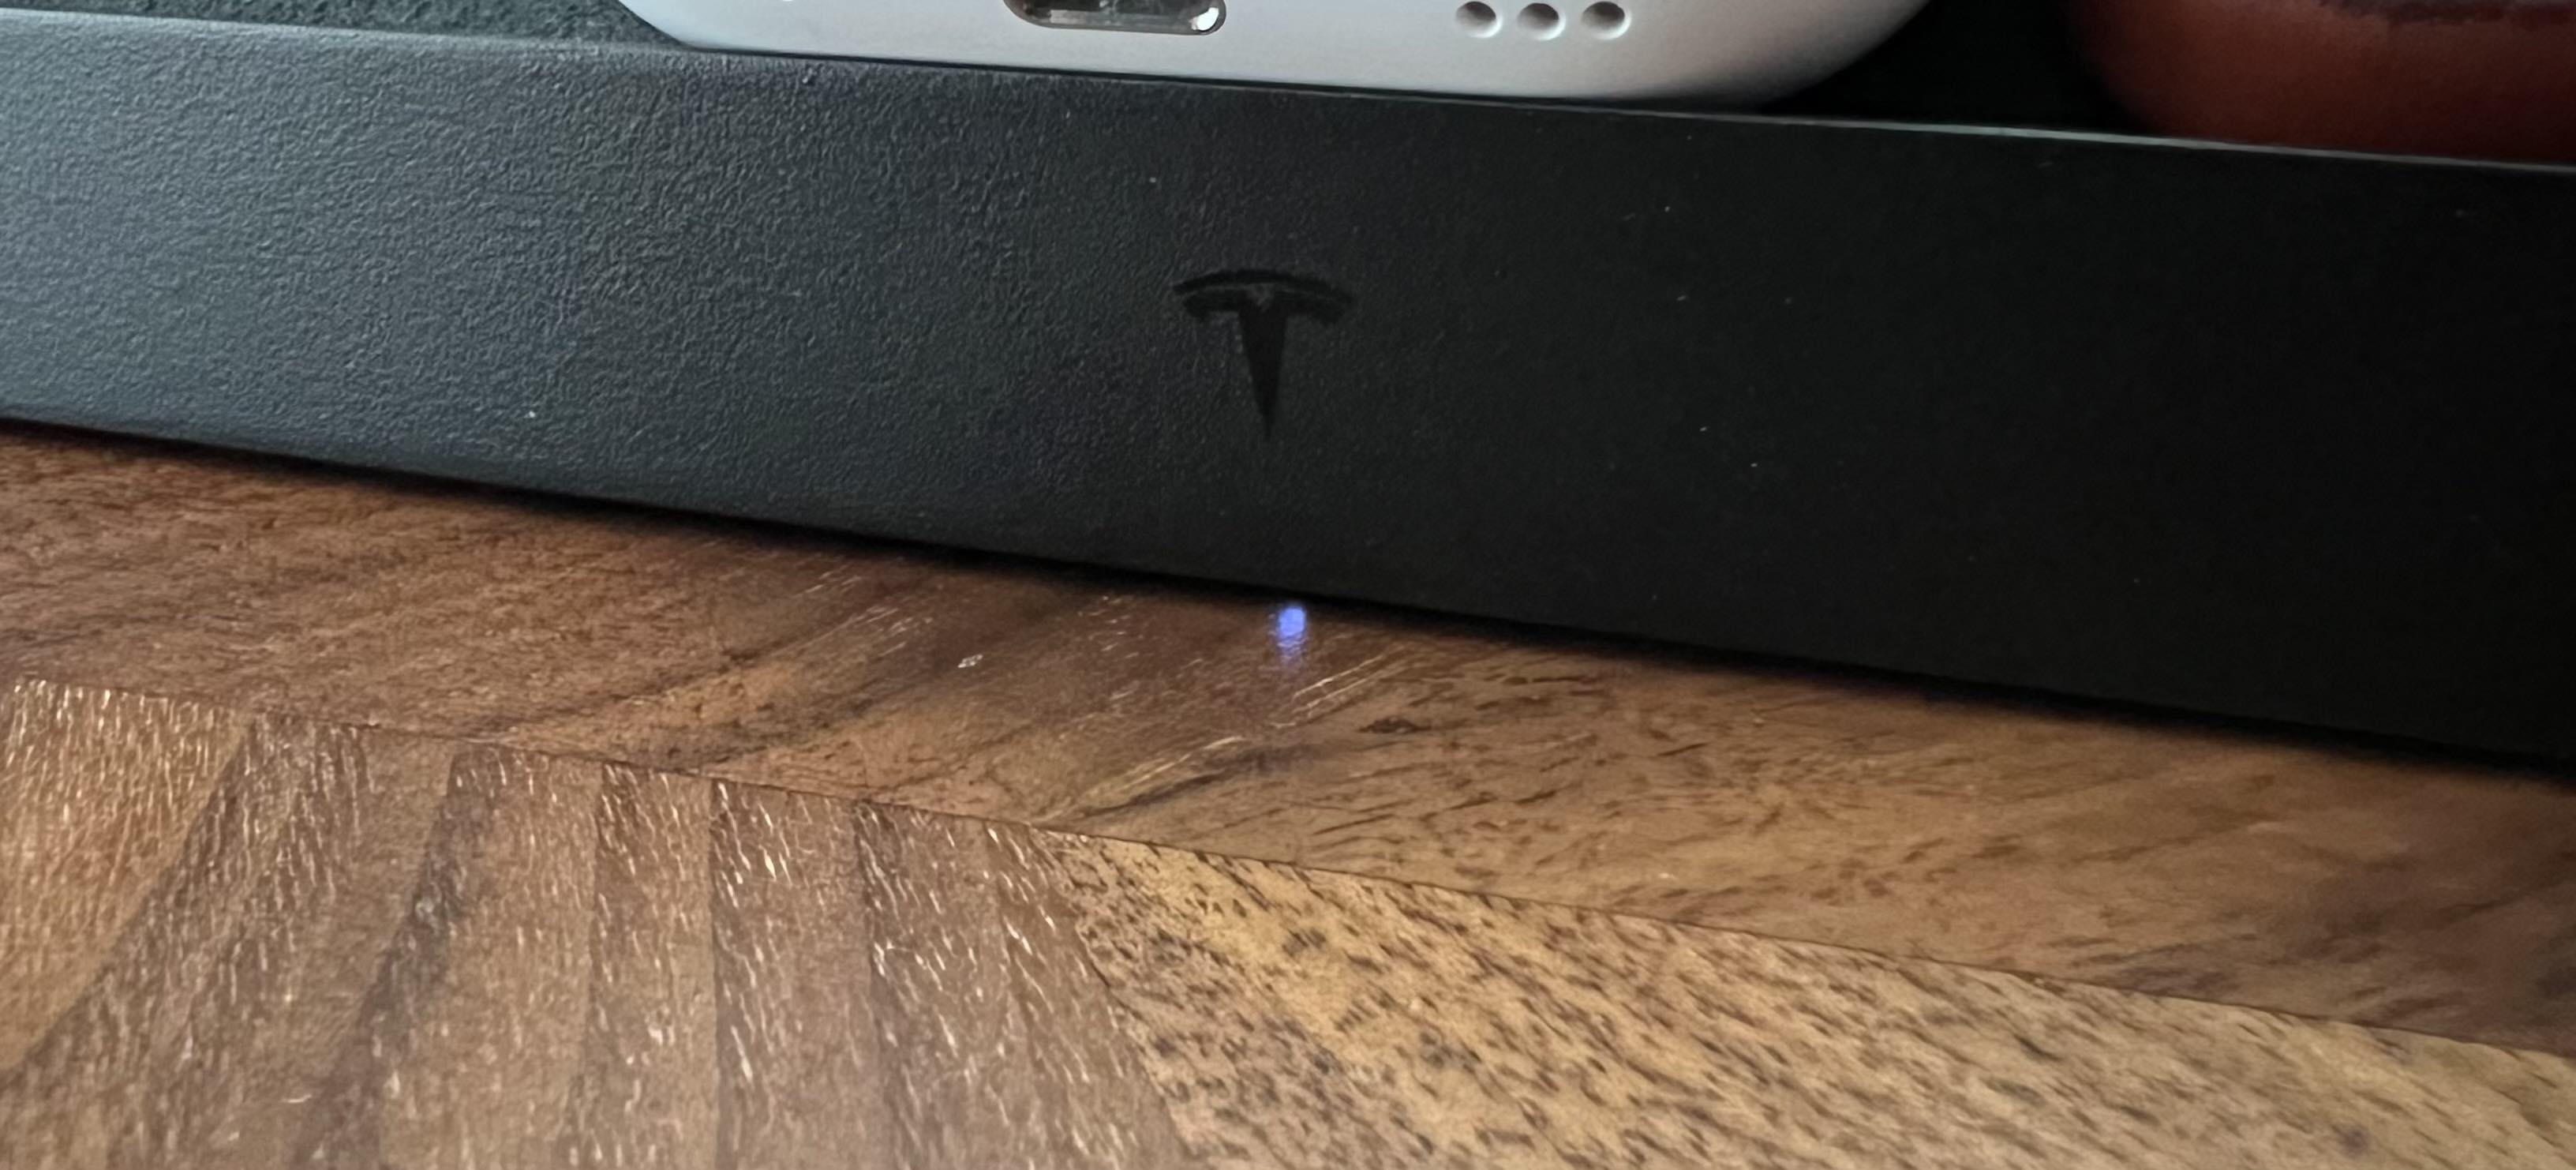 Светодиодный индикатор платформы беспроводной зарядки Tesla